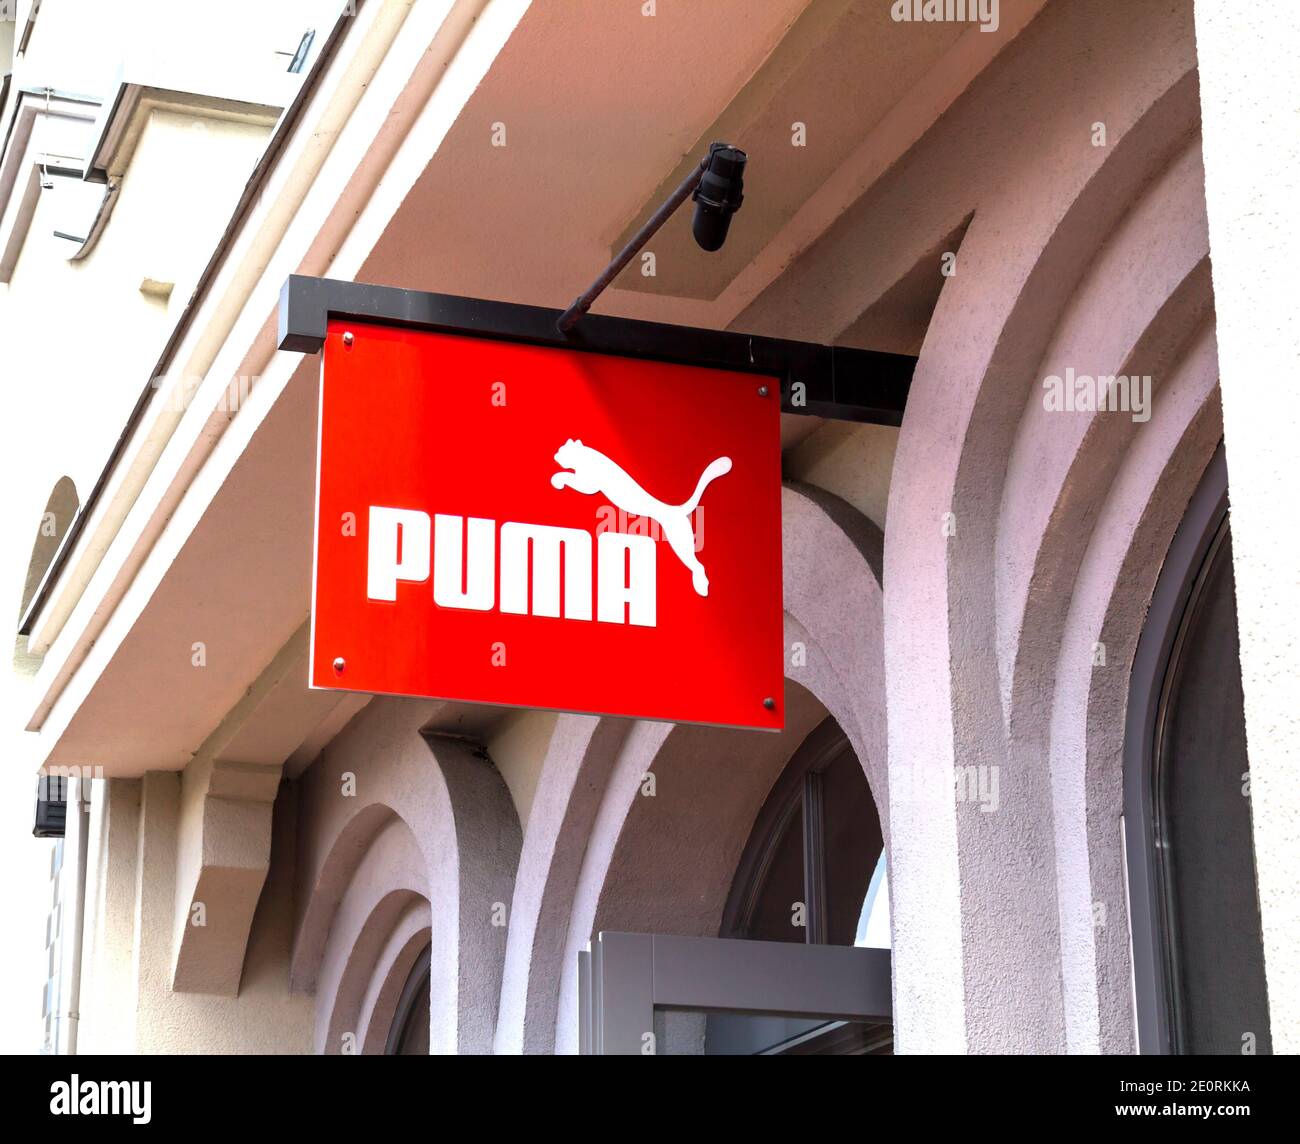 Ingolstadt, Deutschland : Puma Outlet Store. Puma ist ein großes deutsches  multinationales Unternehmen, das sportliche, legere Schuhe und  Sportbekleidung herstellt Stockfotografie - Alamy